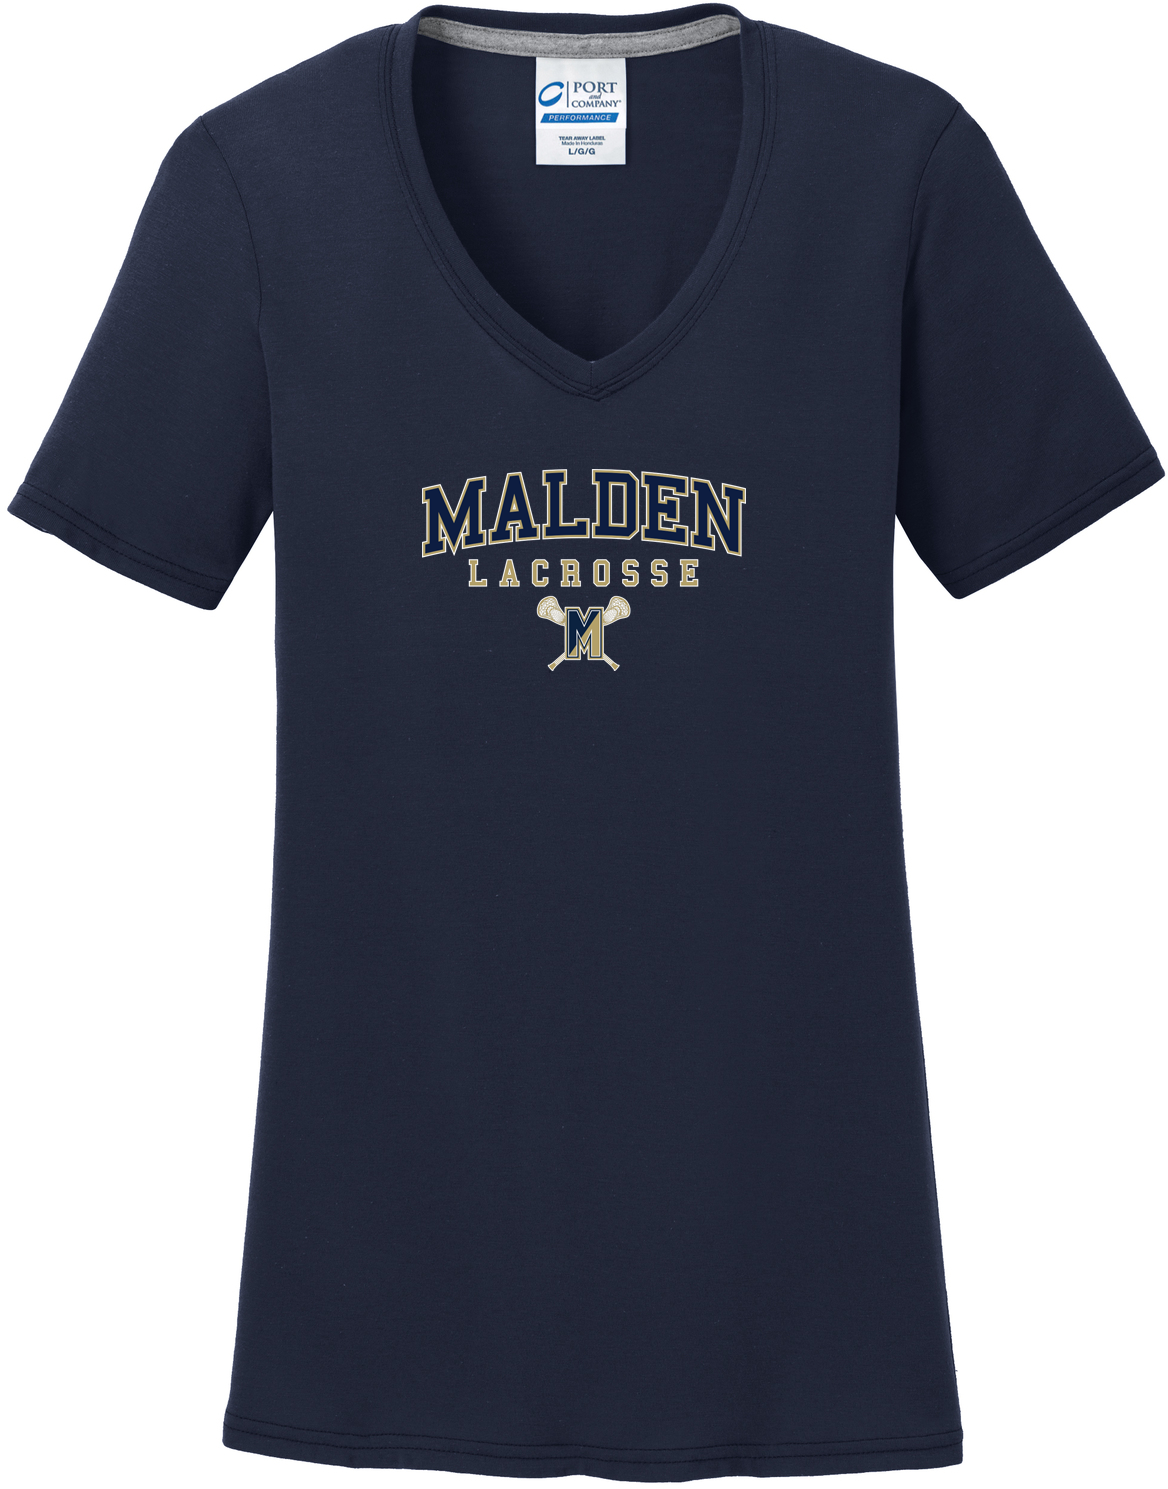 Malden Lacrosse Women's Royal T-Shirt